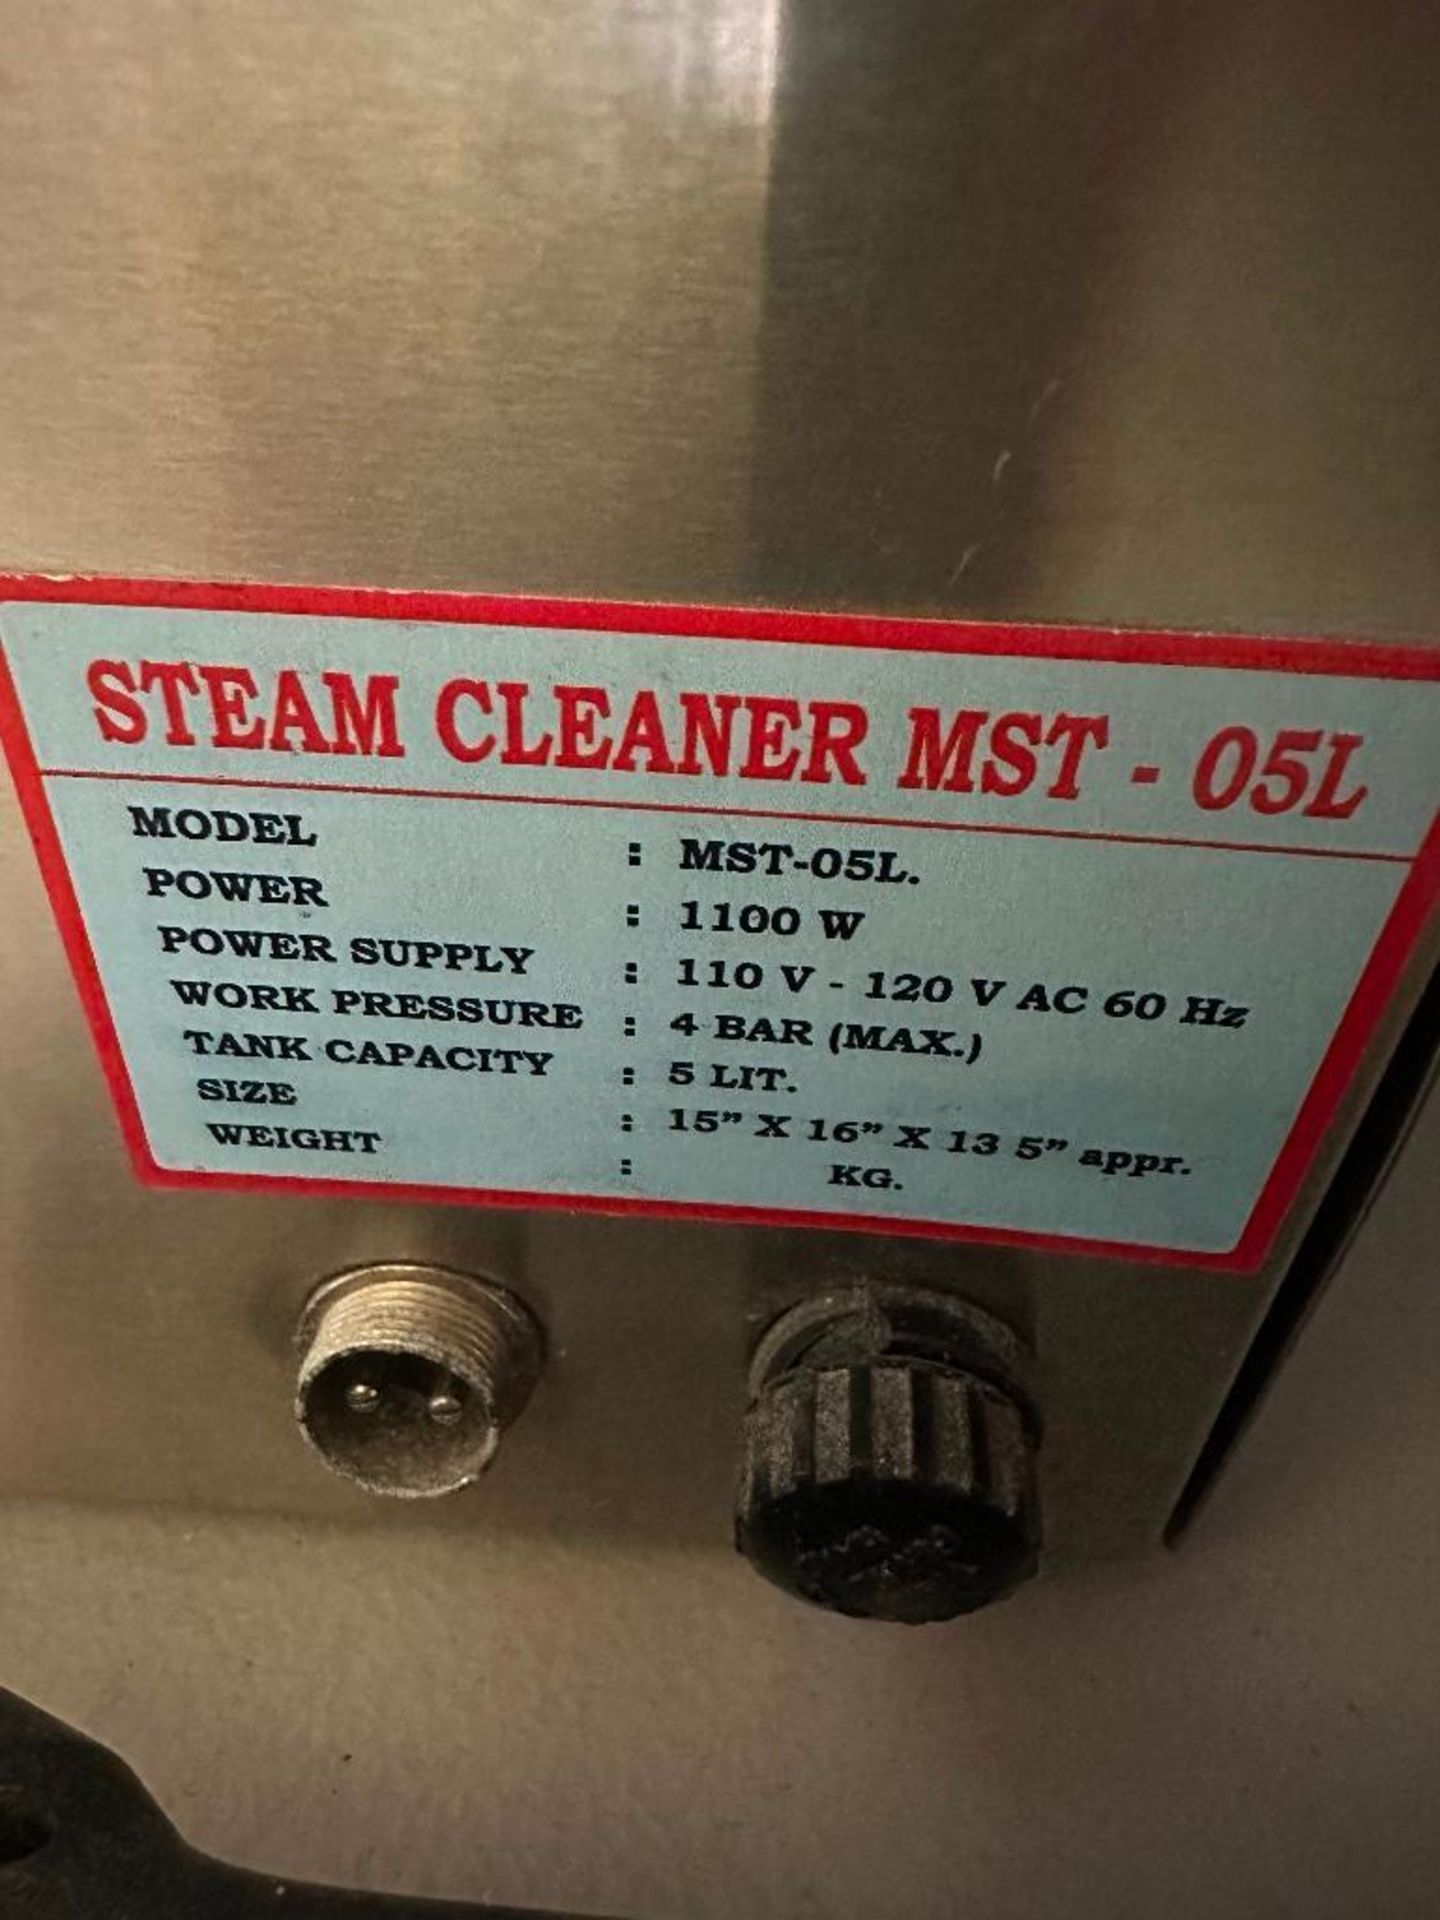 5-Liter Steam Cleaner MST-05L - Image 6 of 6